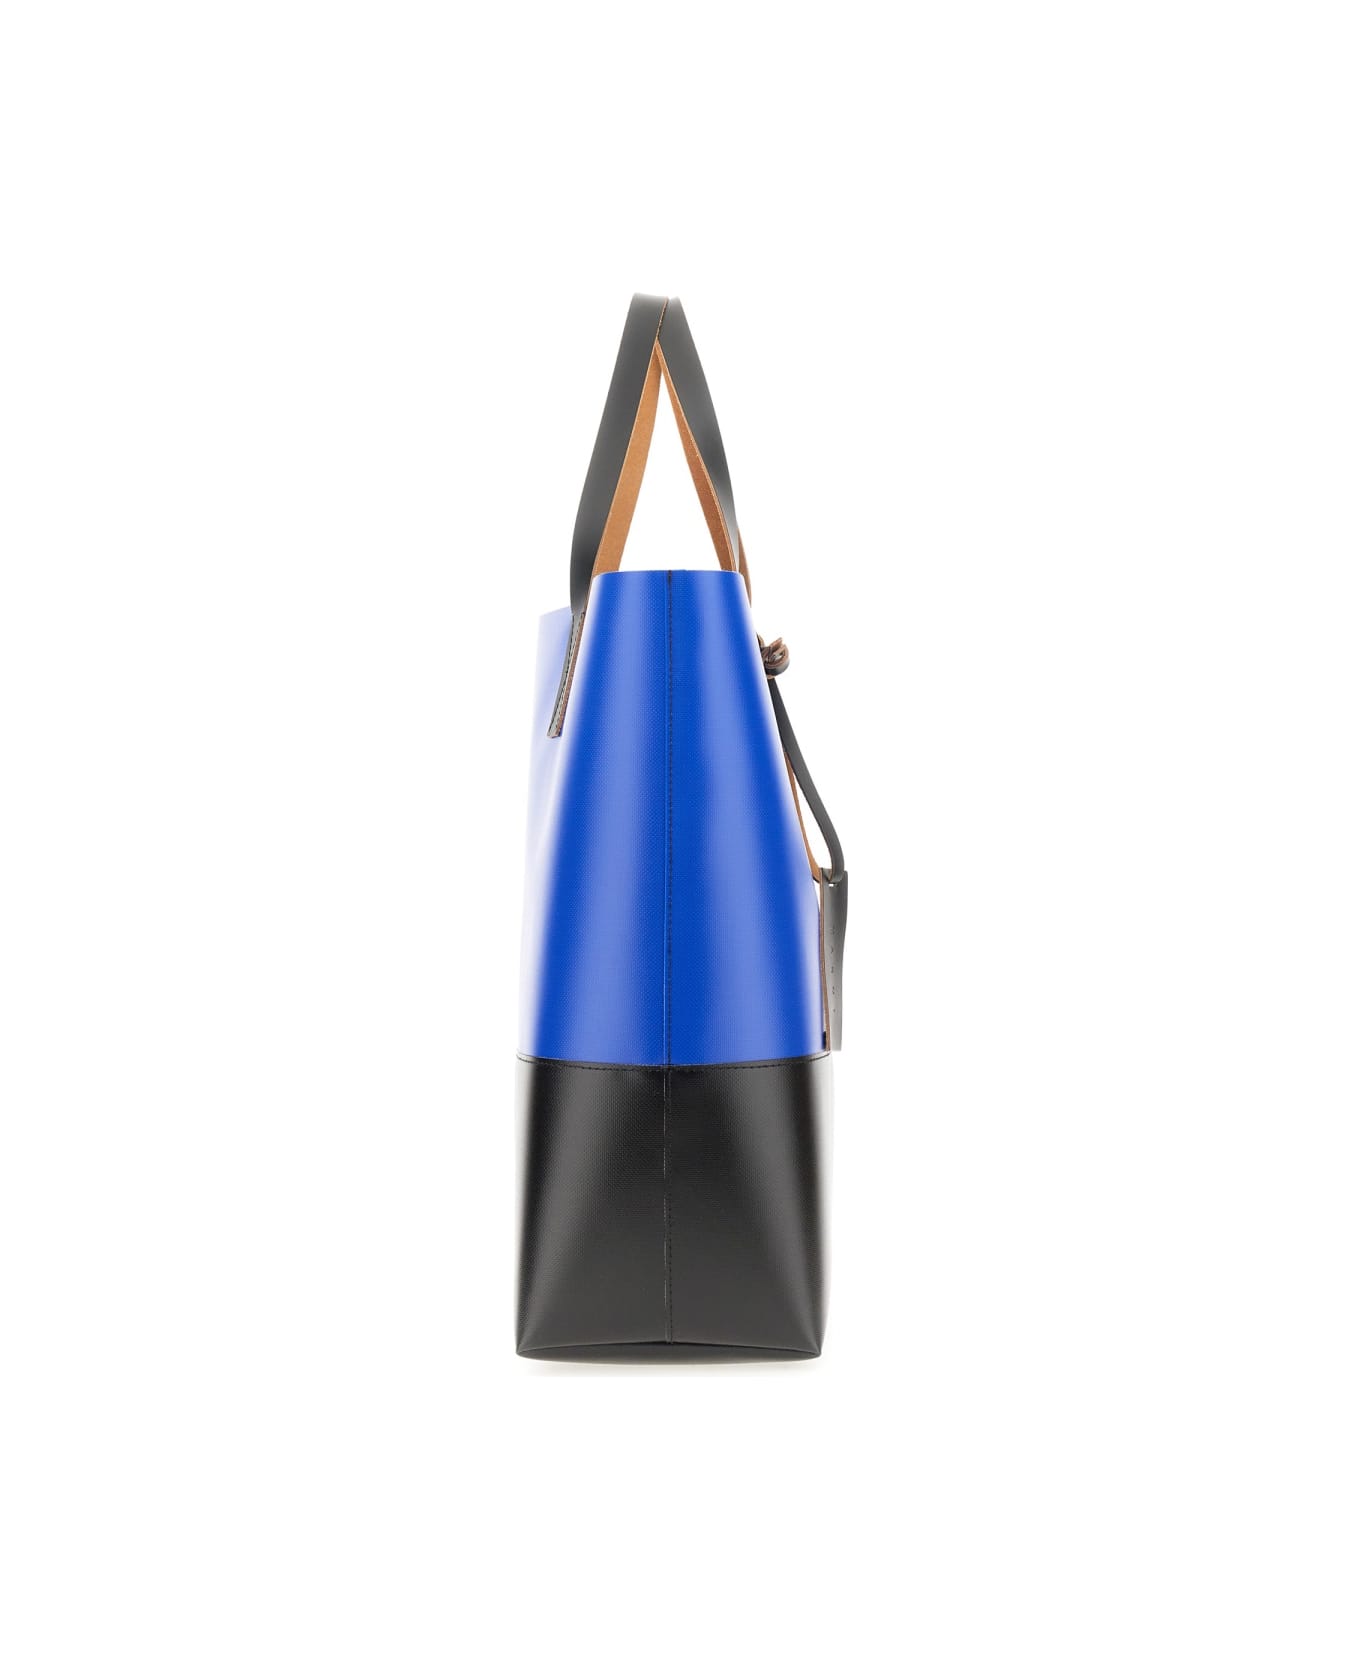 Marni Tribeca Shopper Bag - BLUE